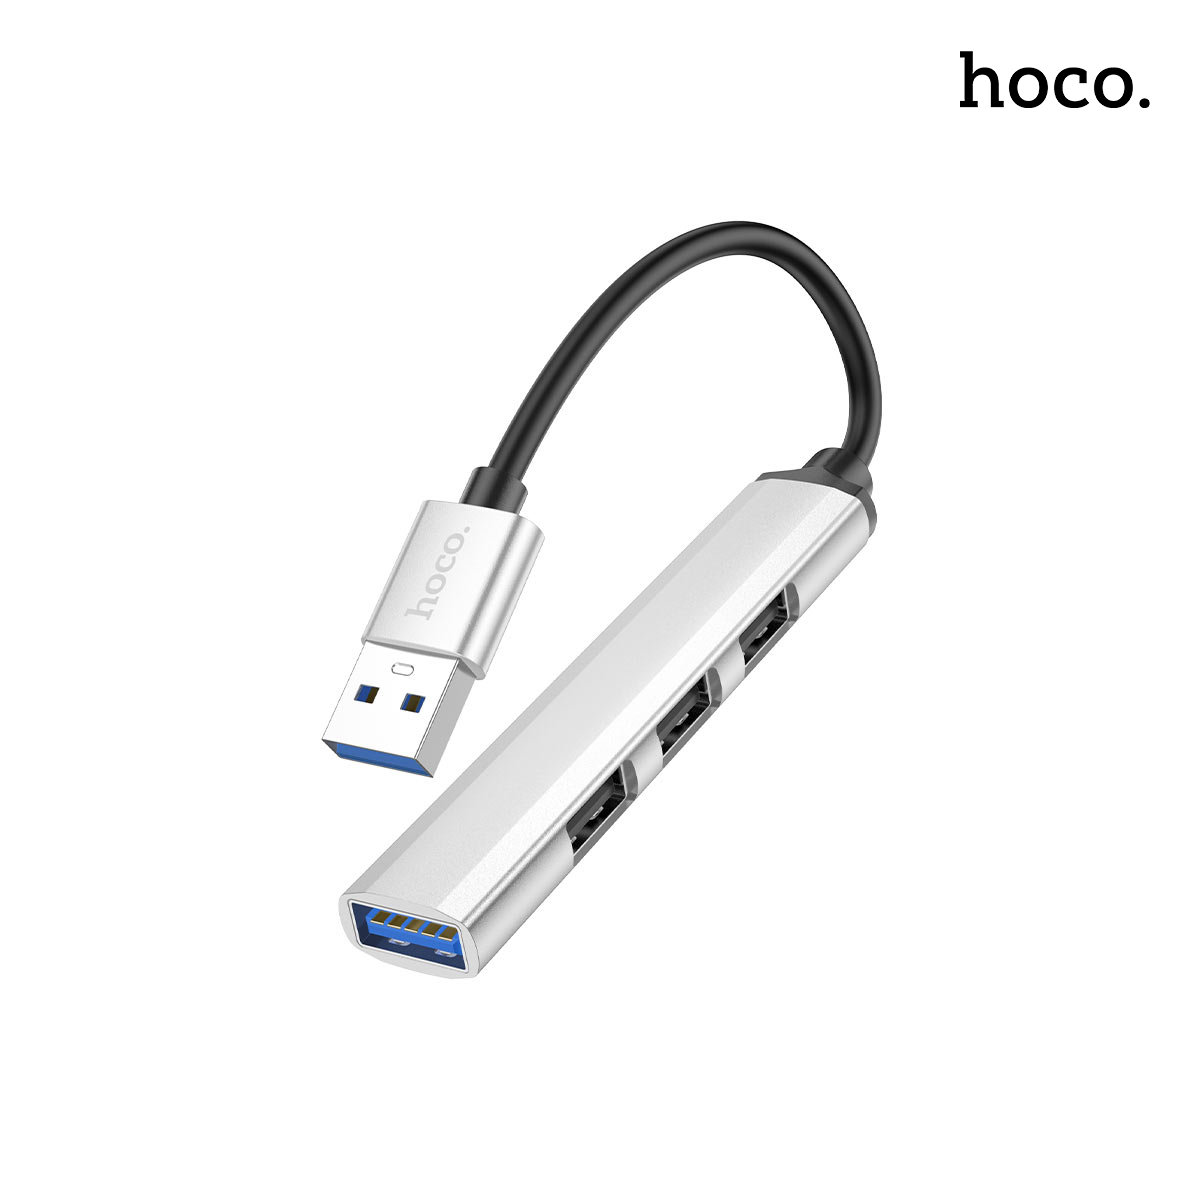 HOCO USB Hub 4 in 1 – HB26